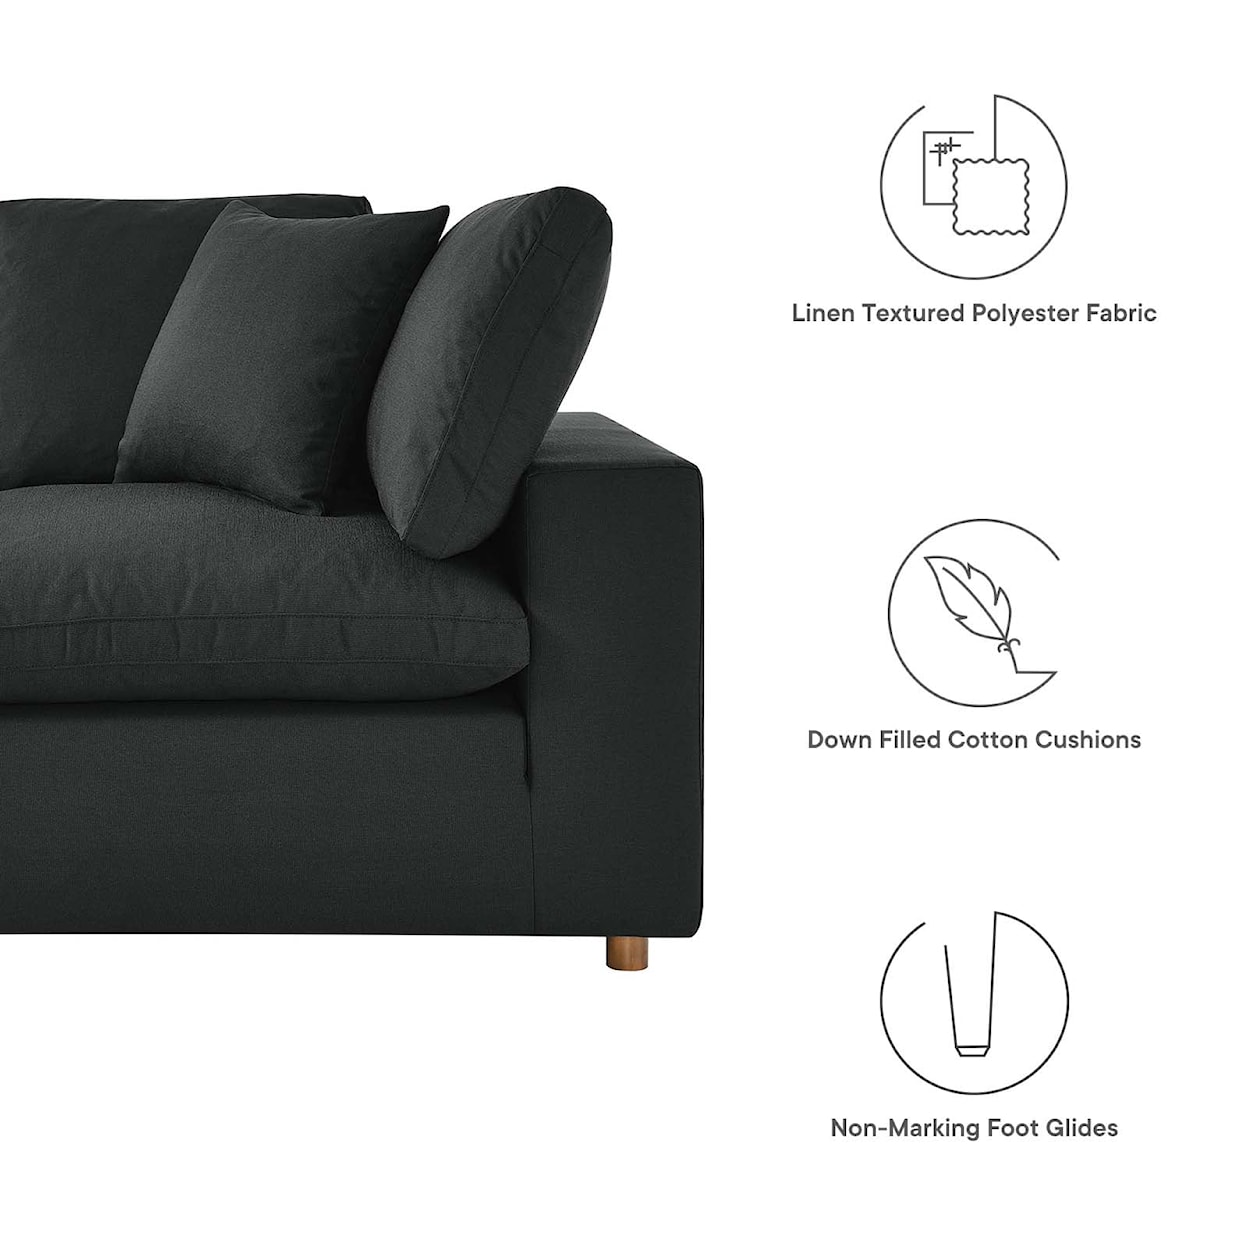 Modway Commix 5 Piece 5-Piece Sectional Sofa